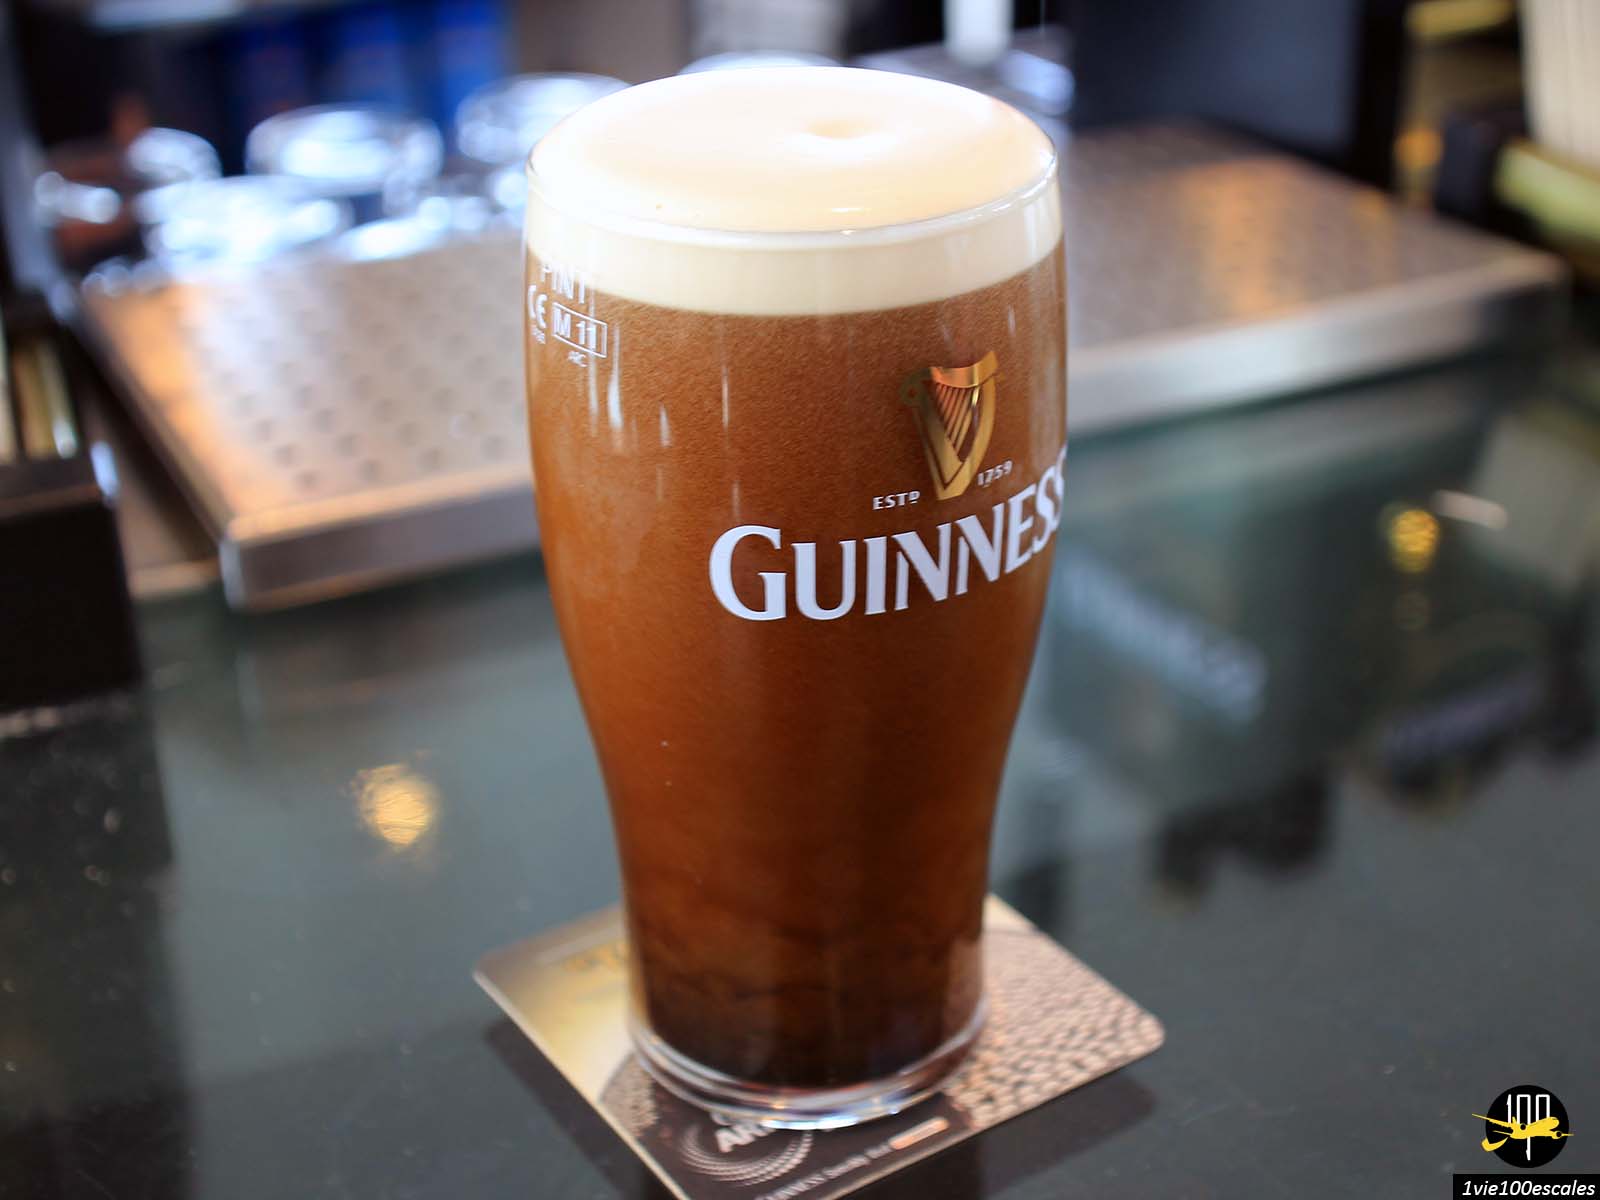 Le Guinness Storehouse est un musée de Dublin entièrement dédié à la démesure de l'empire Guinness. Une expérience unique